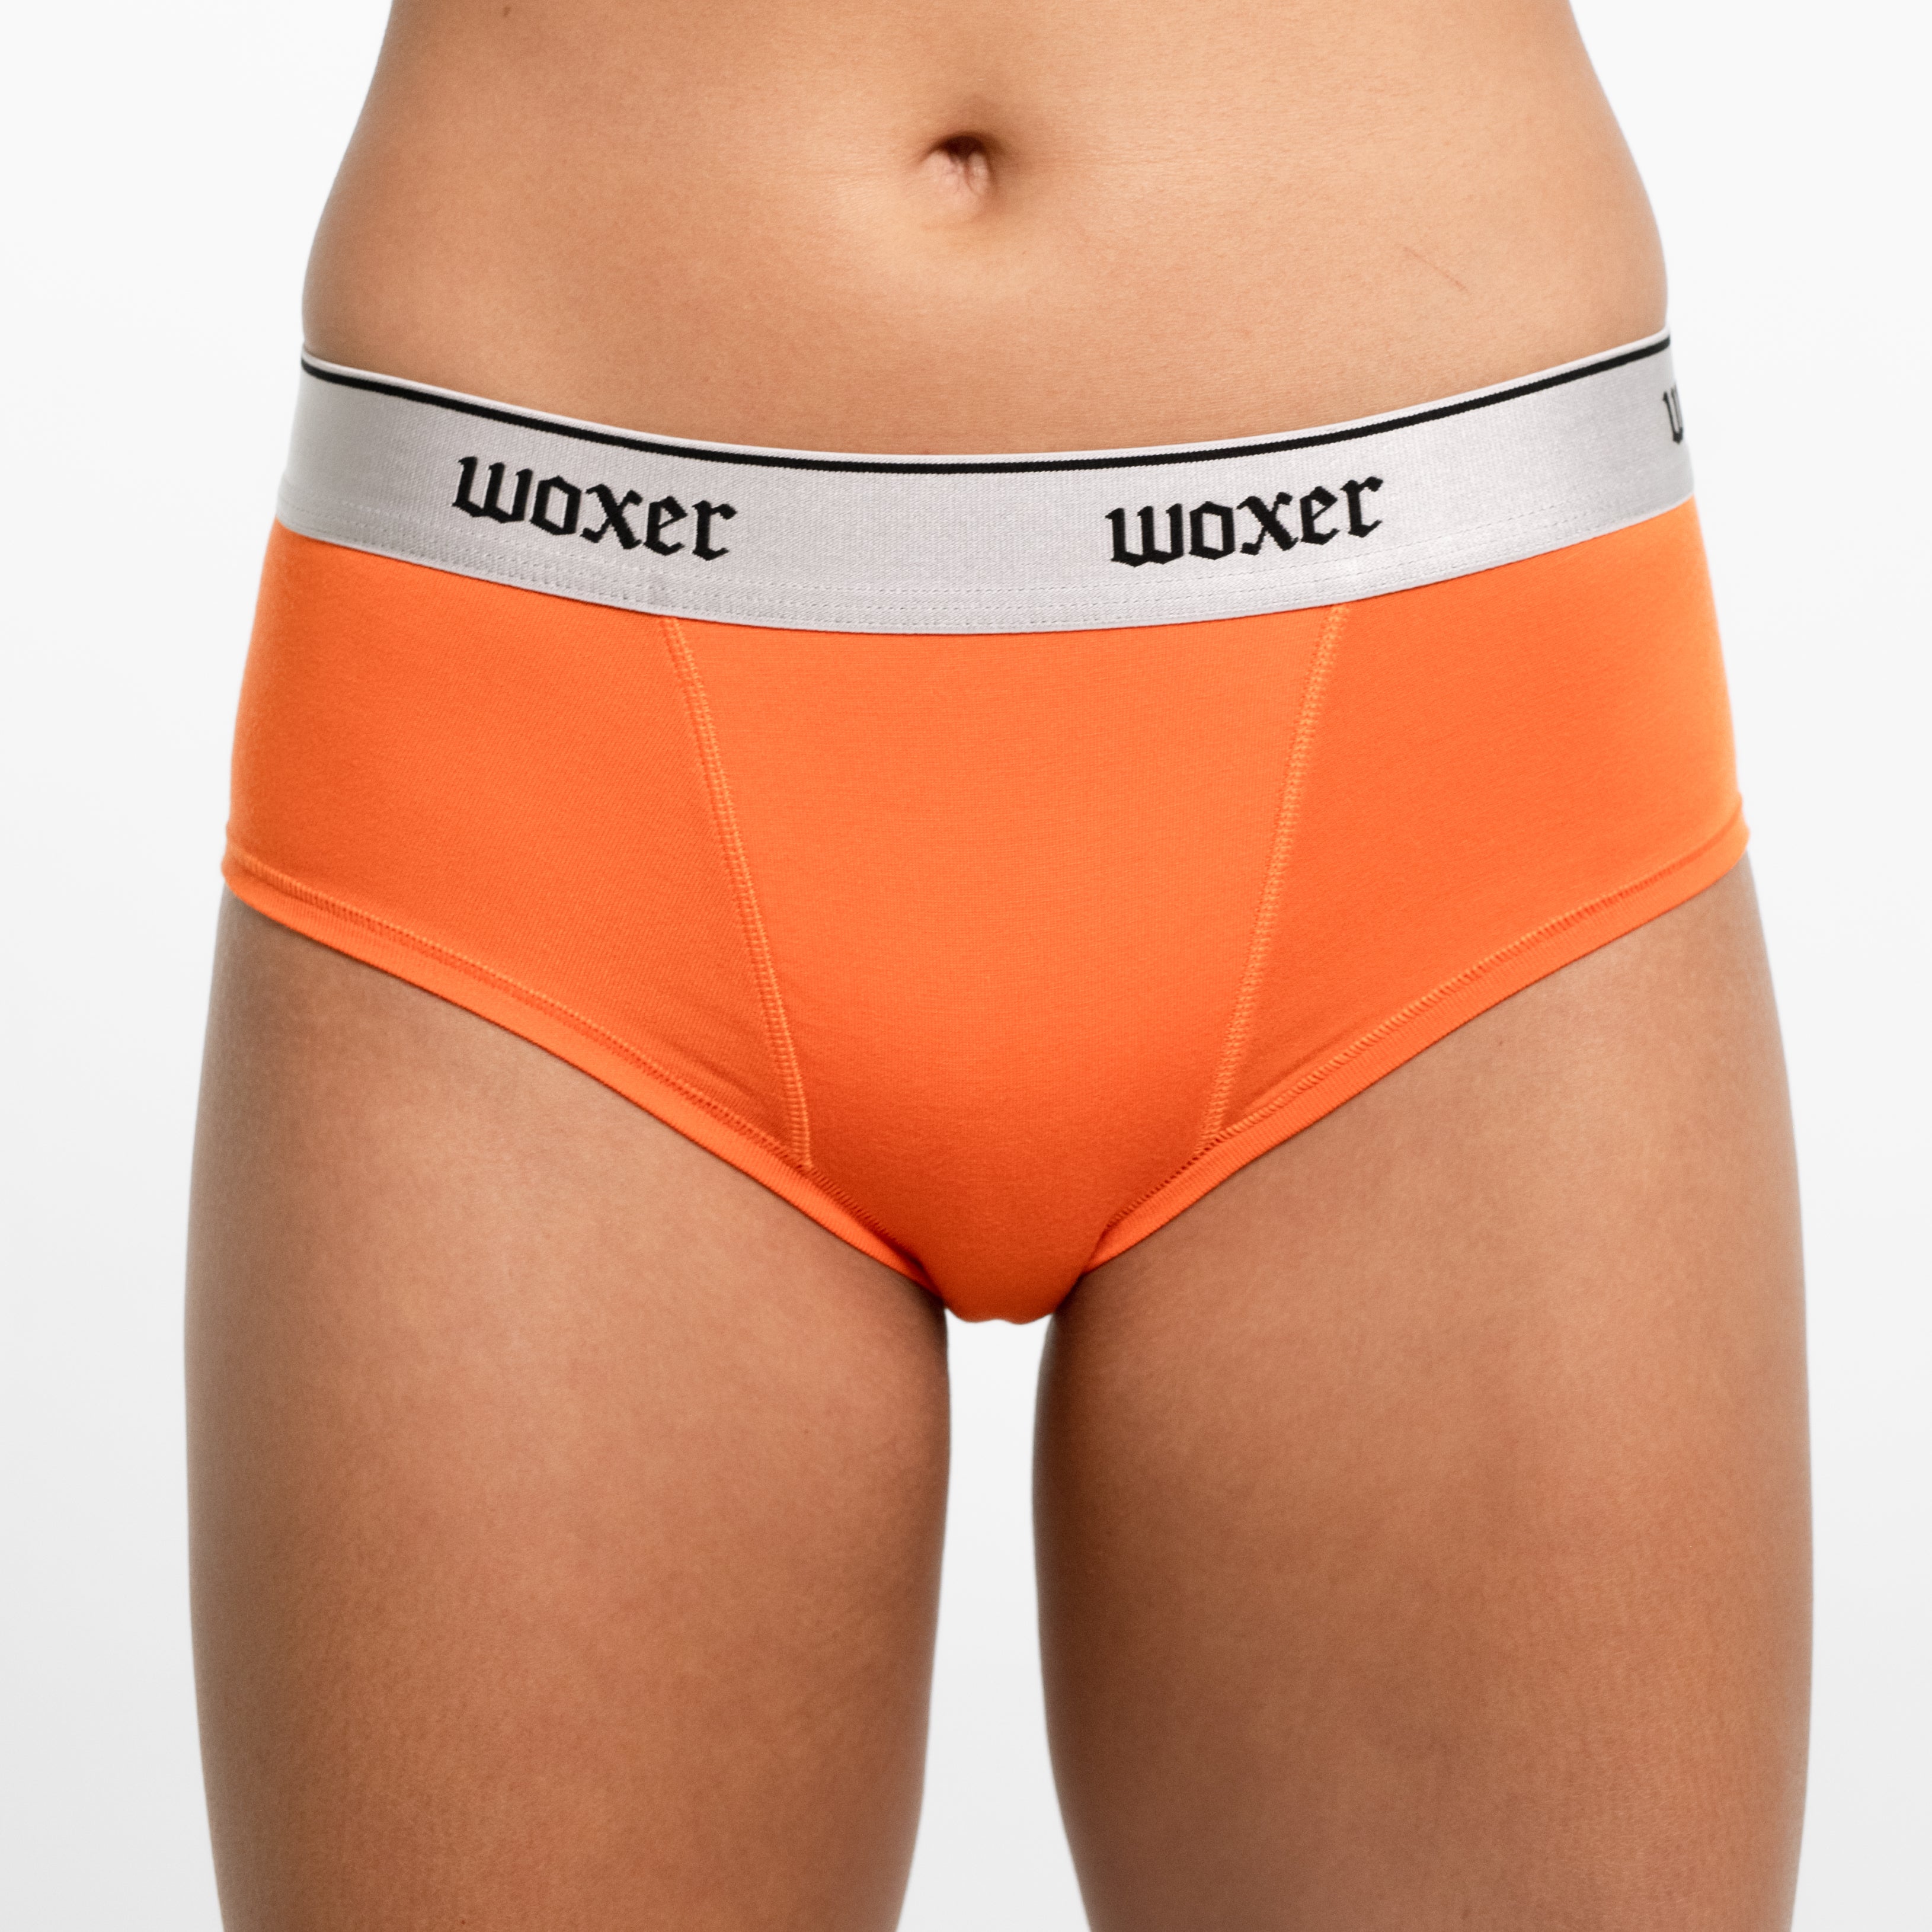 Woxer Women's Boxer Briefs Underwear, Biker 9” Boyshorts, Exercise